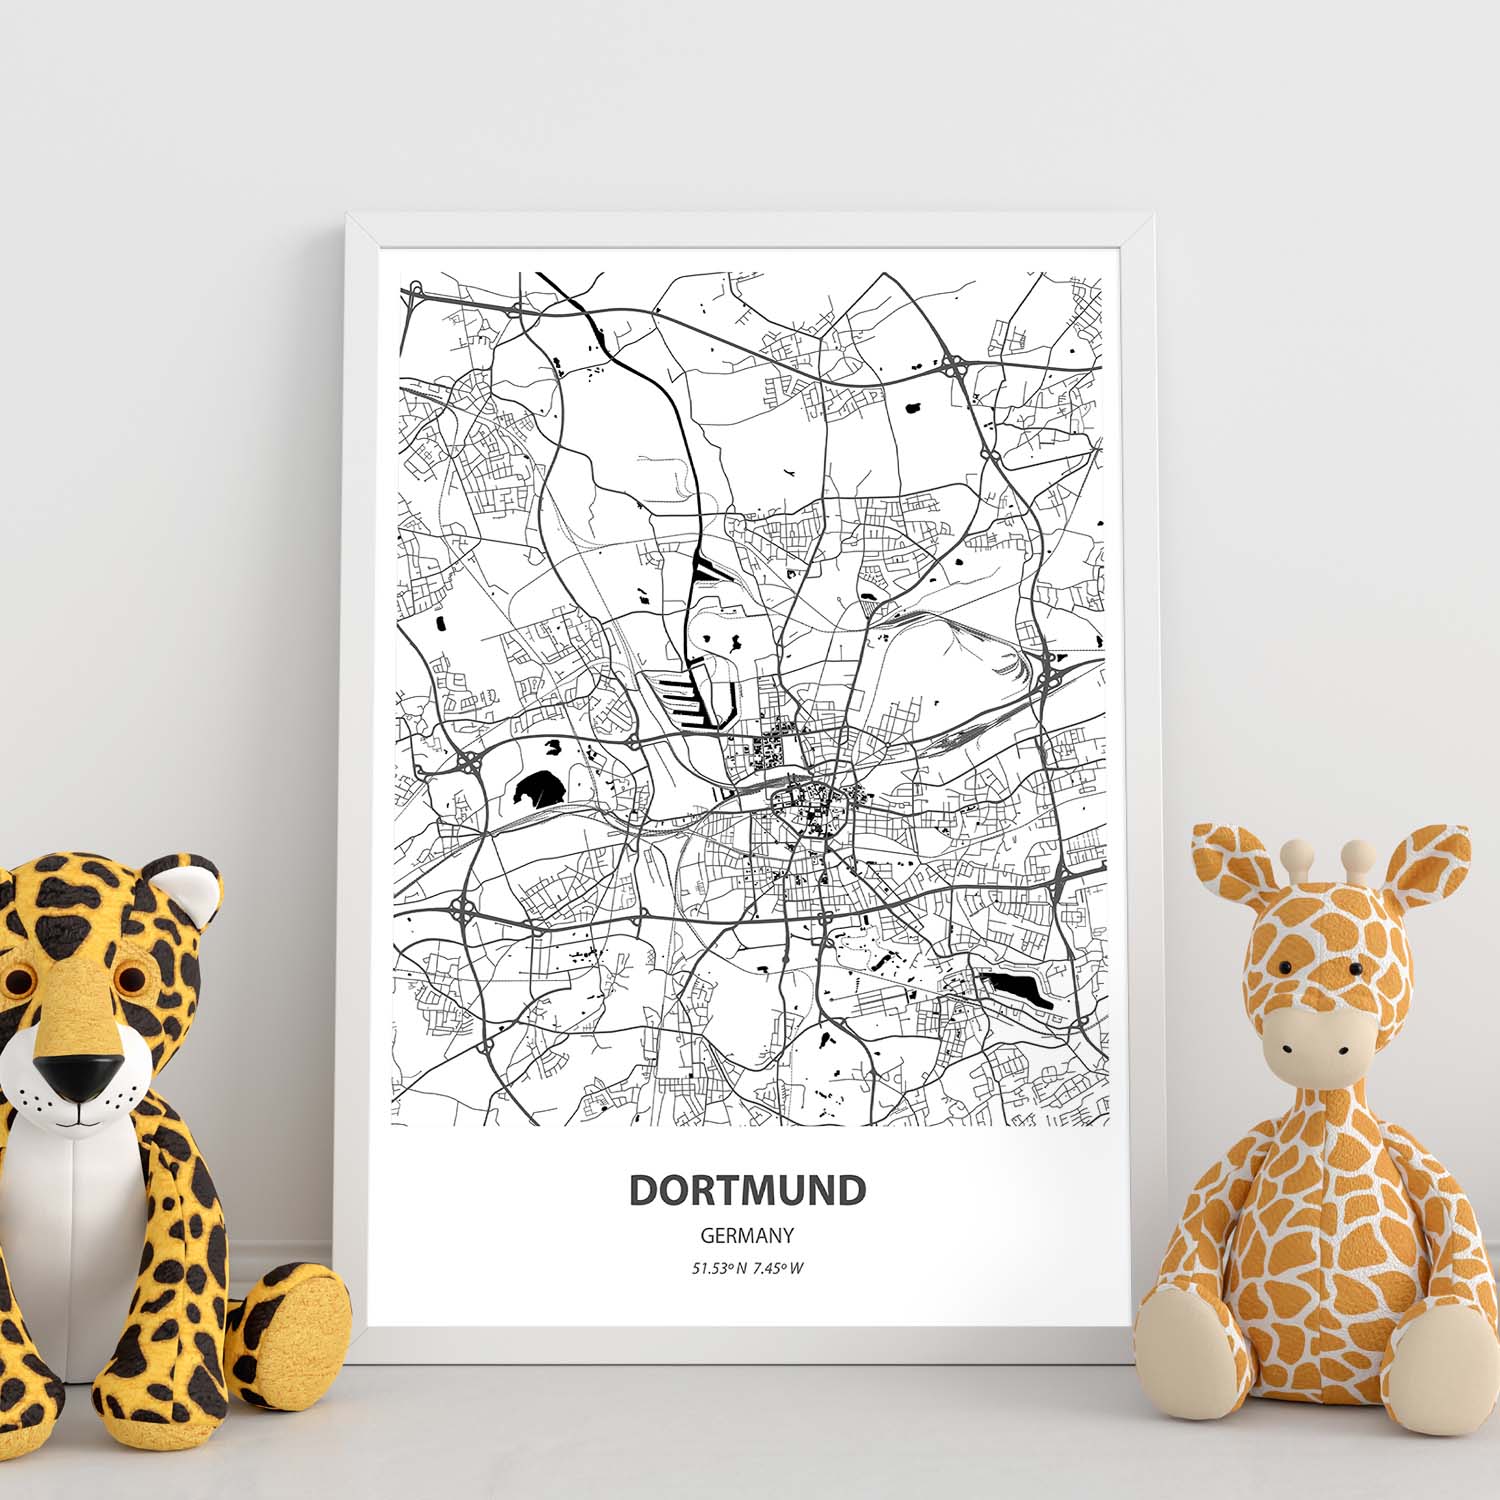 Poster con mapa de Dortmund - Alemania. Láminas de ciudades de Alemania con mares y ríos en color negro.-Artwork-Nacnic-Nacnic Estudio SL